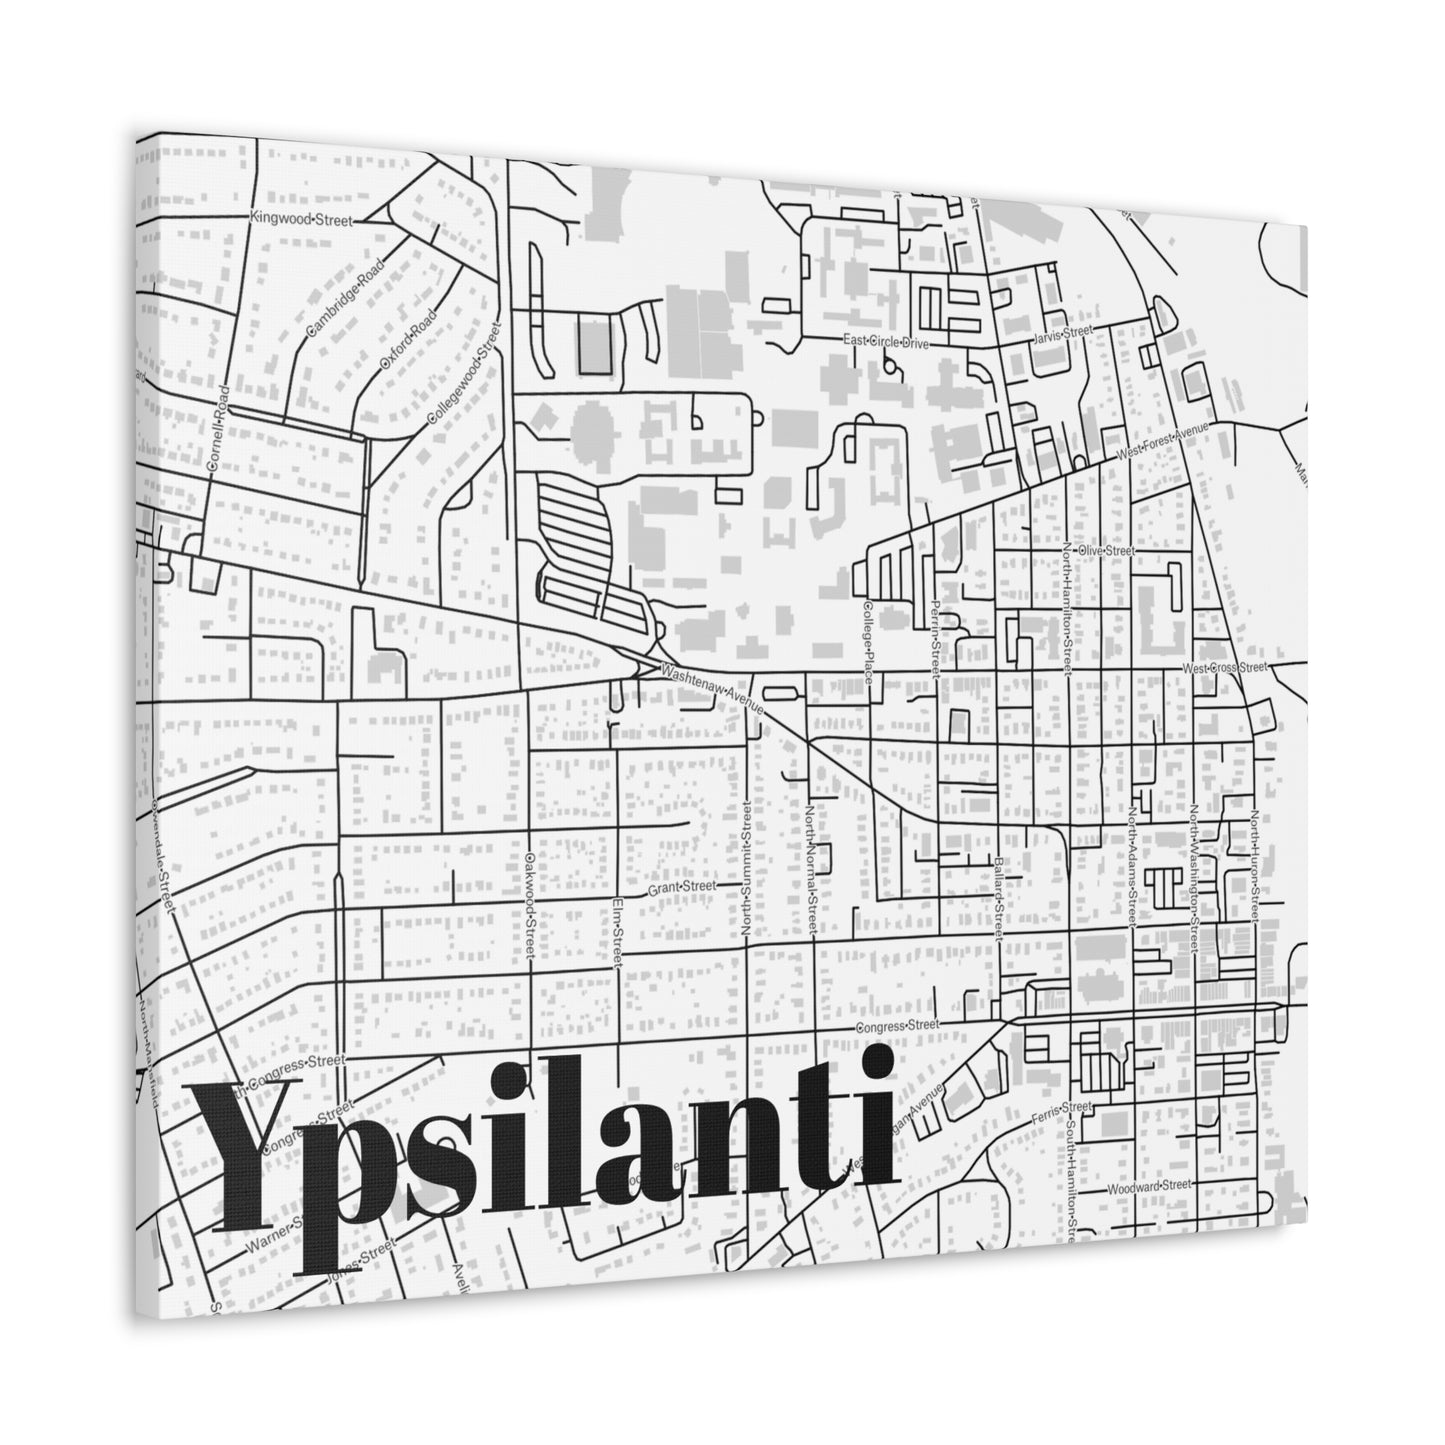 Ypsilanti (City) Canvas